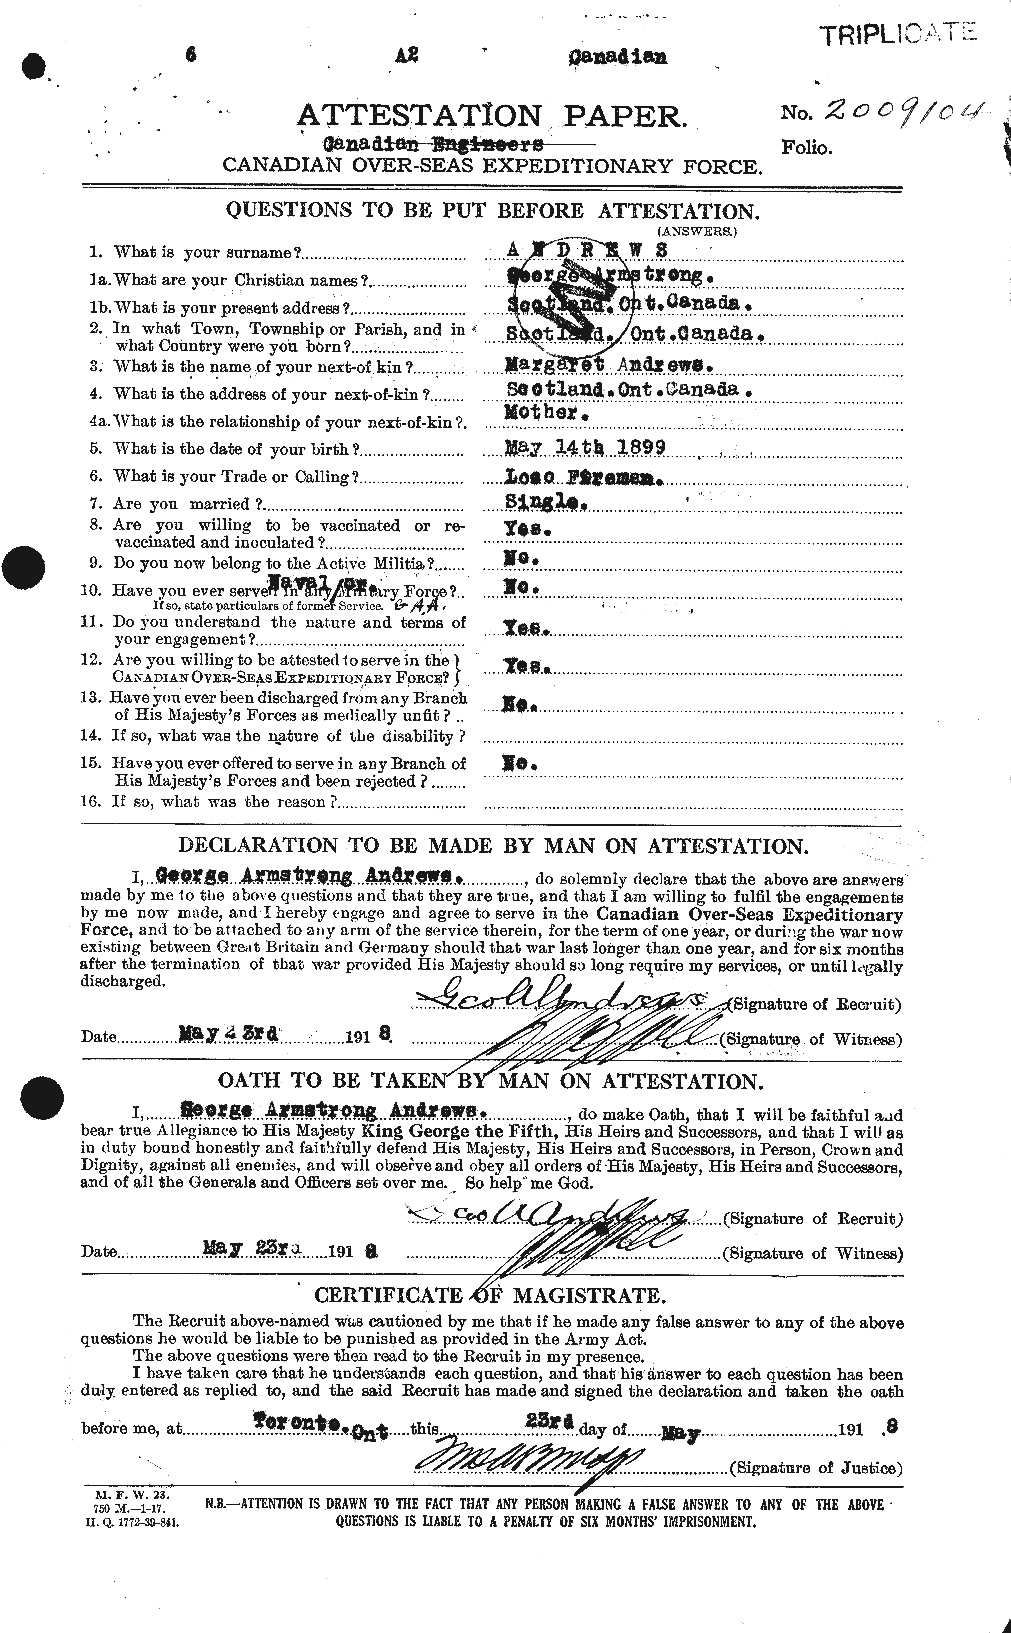 Dossiers du Personnel de la Première Guerre mondiale - CEC 210323a